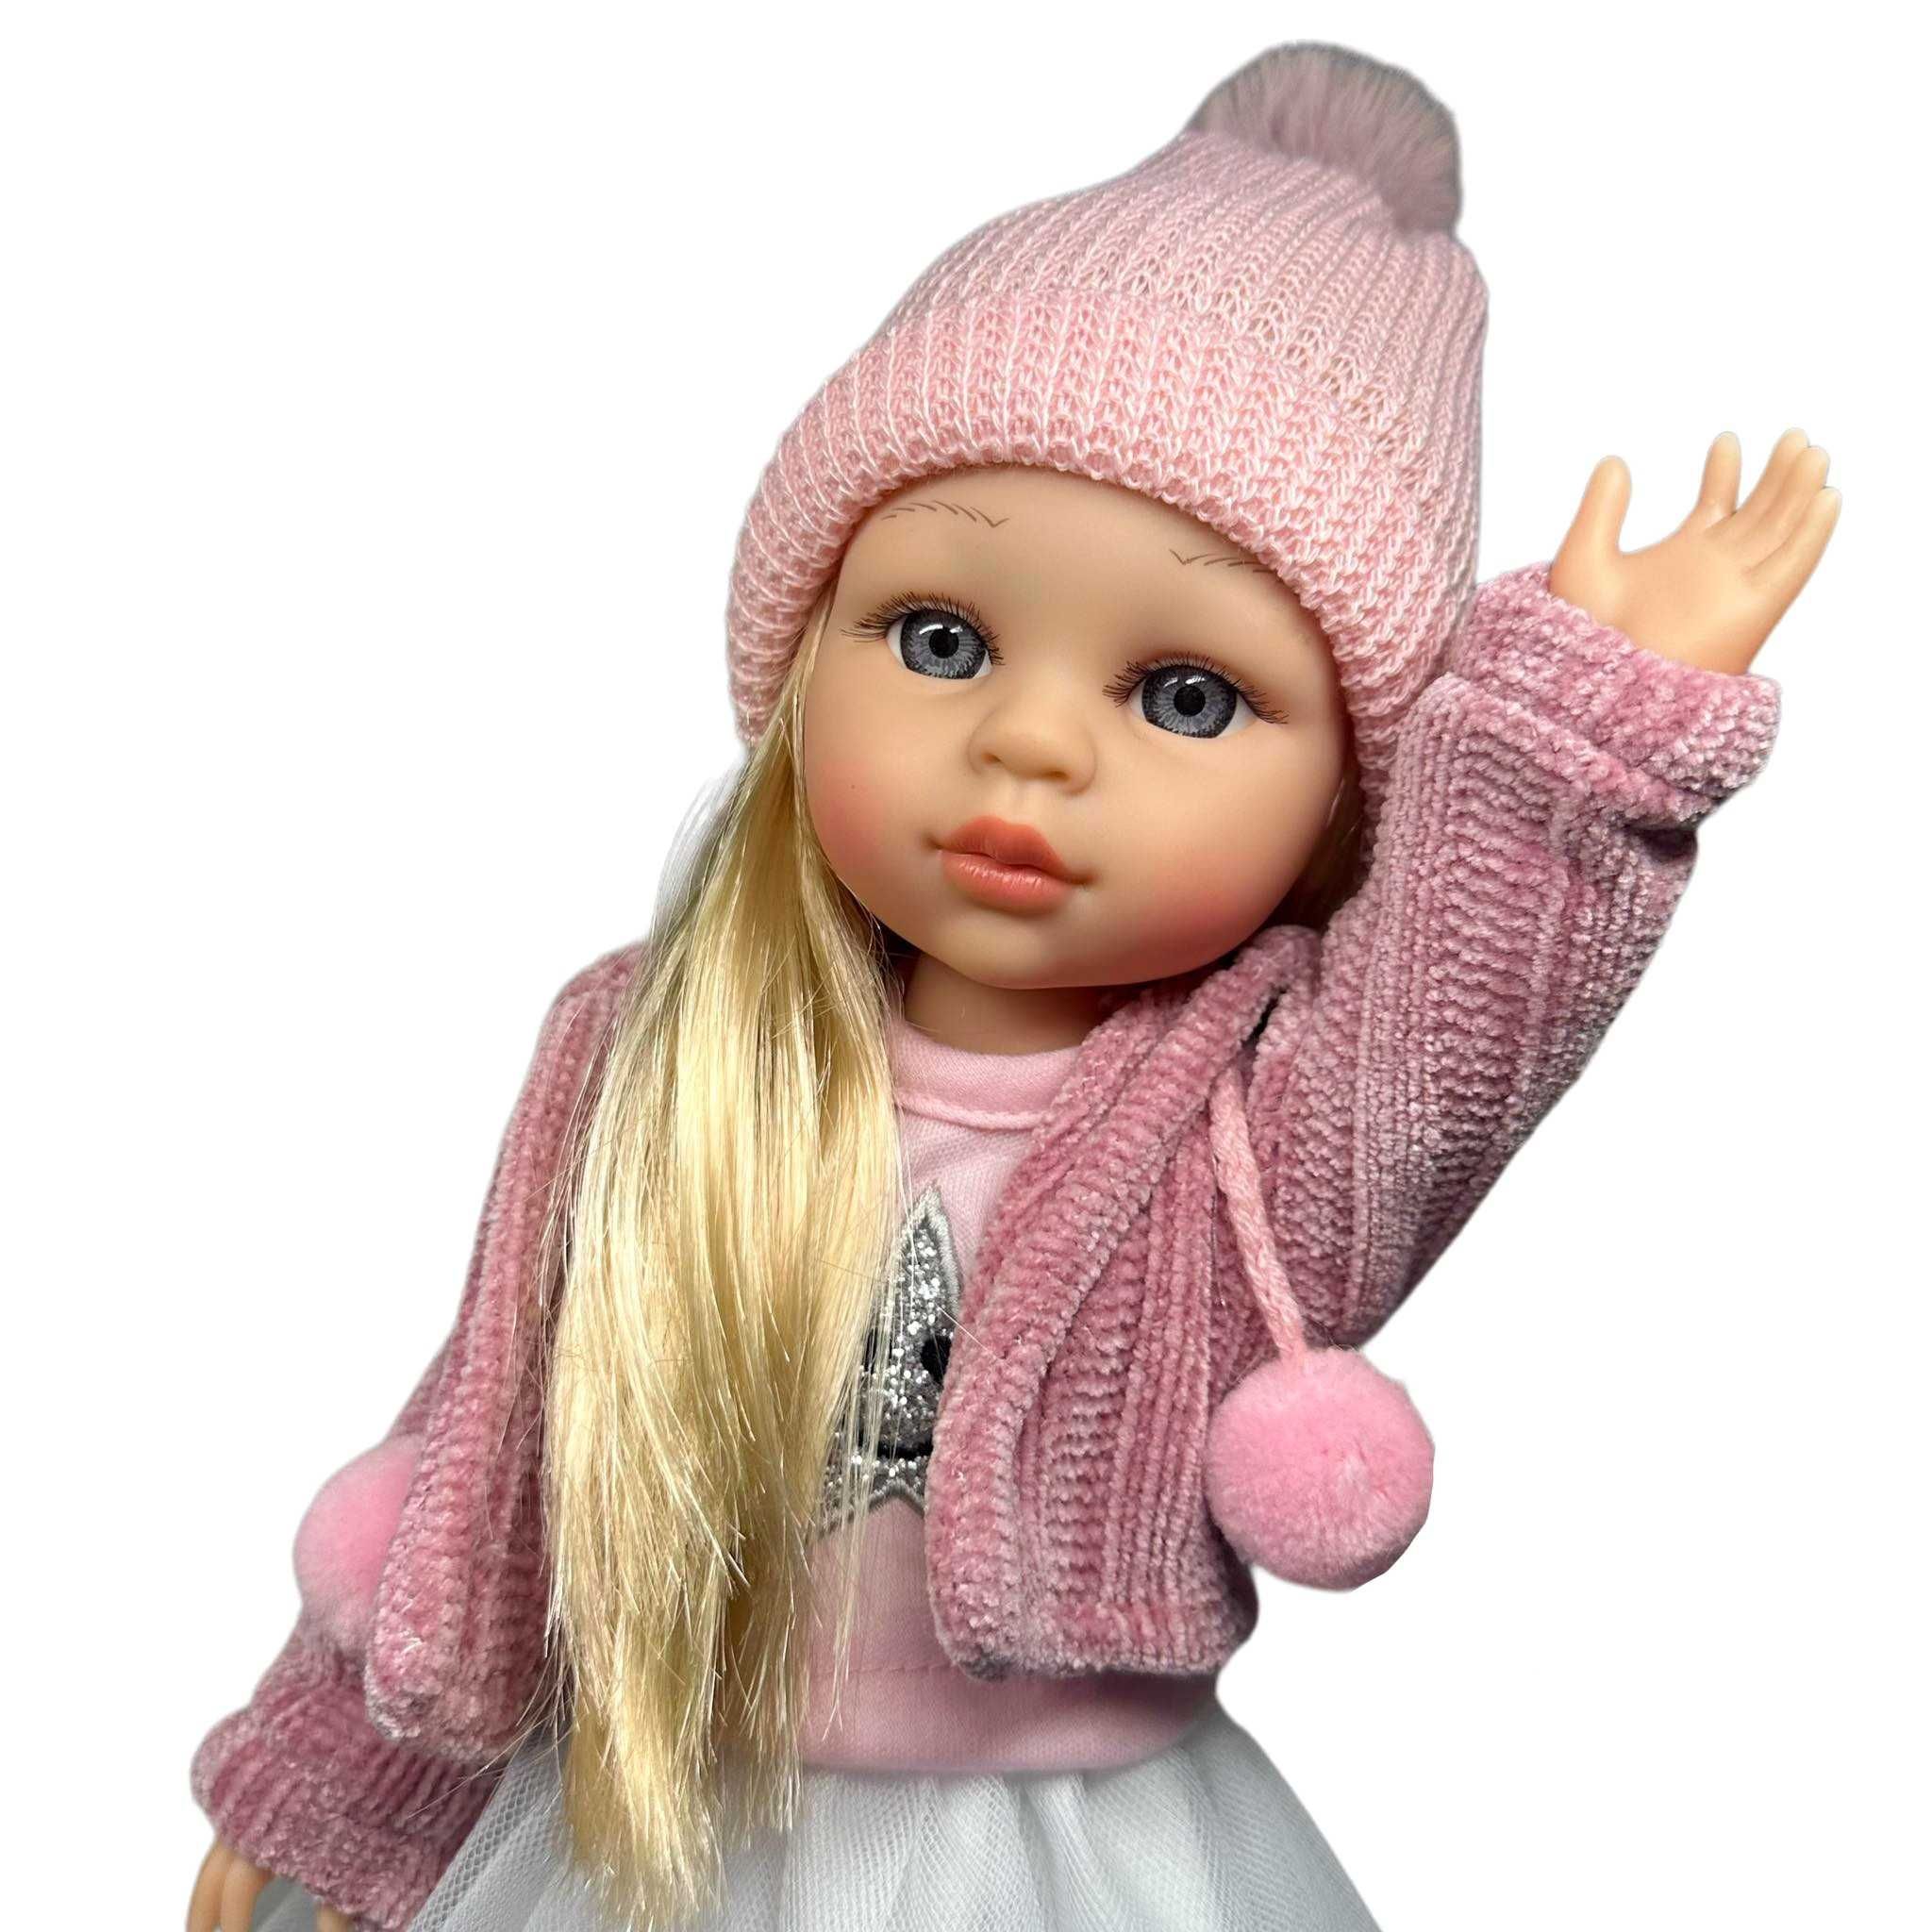 nowa lalka interaktywna mówi śpiewa po polsku gumowa z włosami